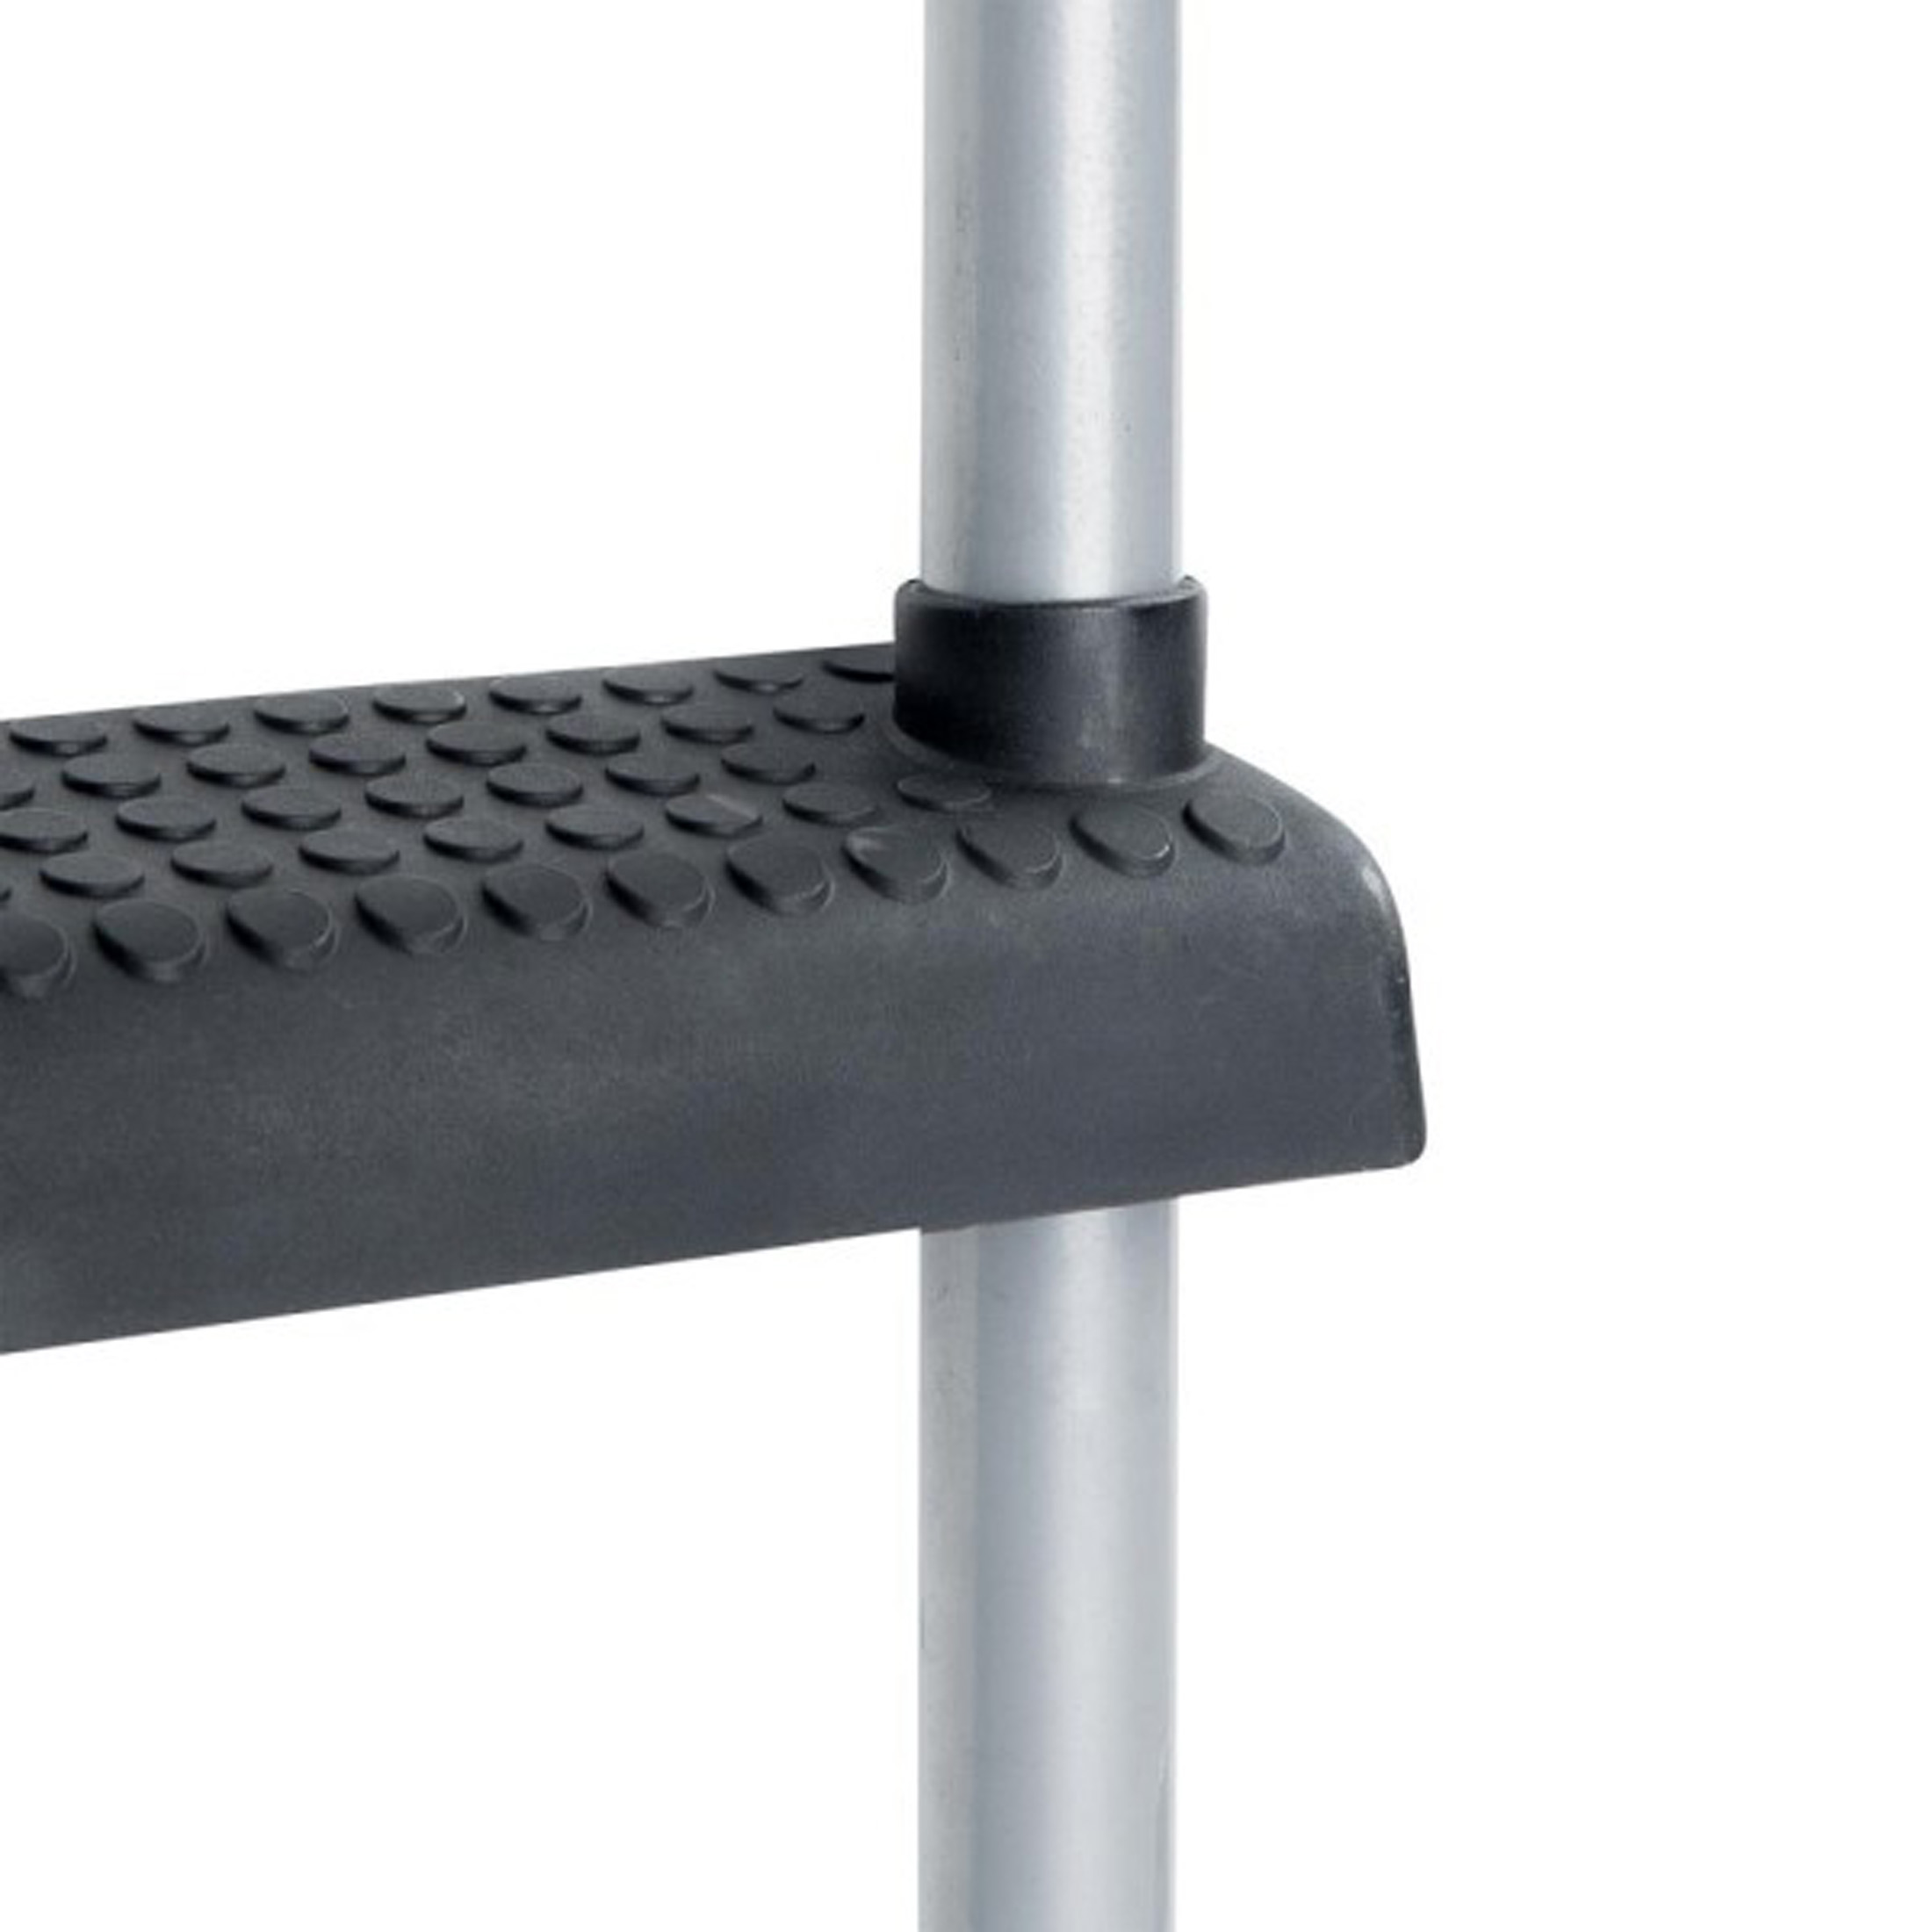 Trampolinleiter, 244-251cm Höhe,für und Gartentrampolin mit Leiter 75cm mit Trampoline Durchmesser,rutschfest schwarz/grau stabil ZOOMYO